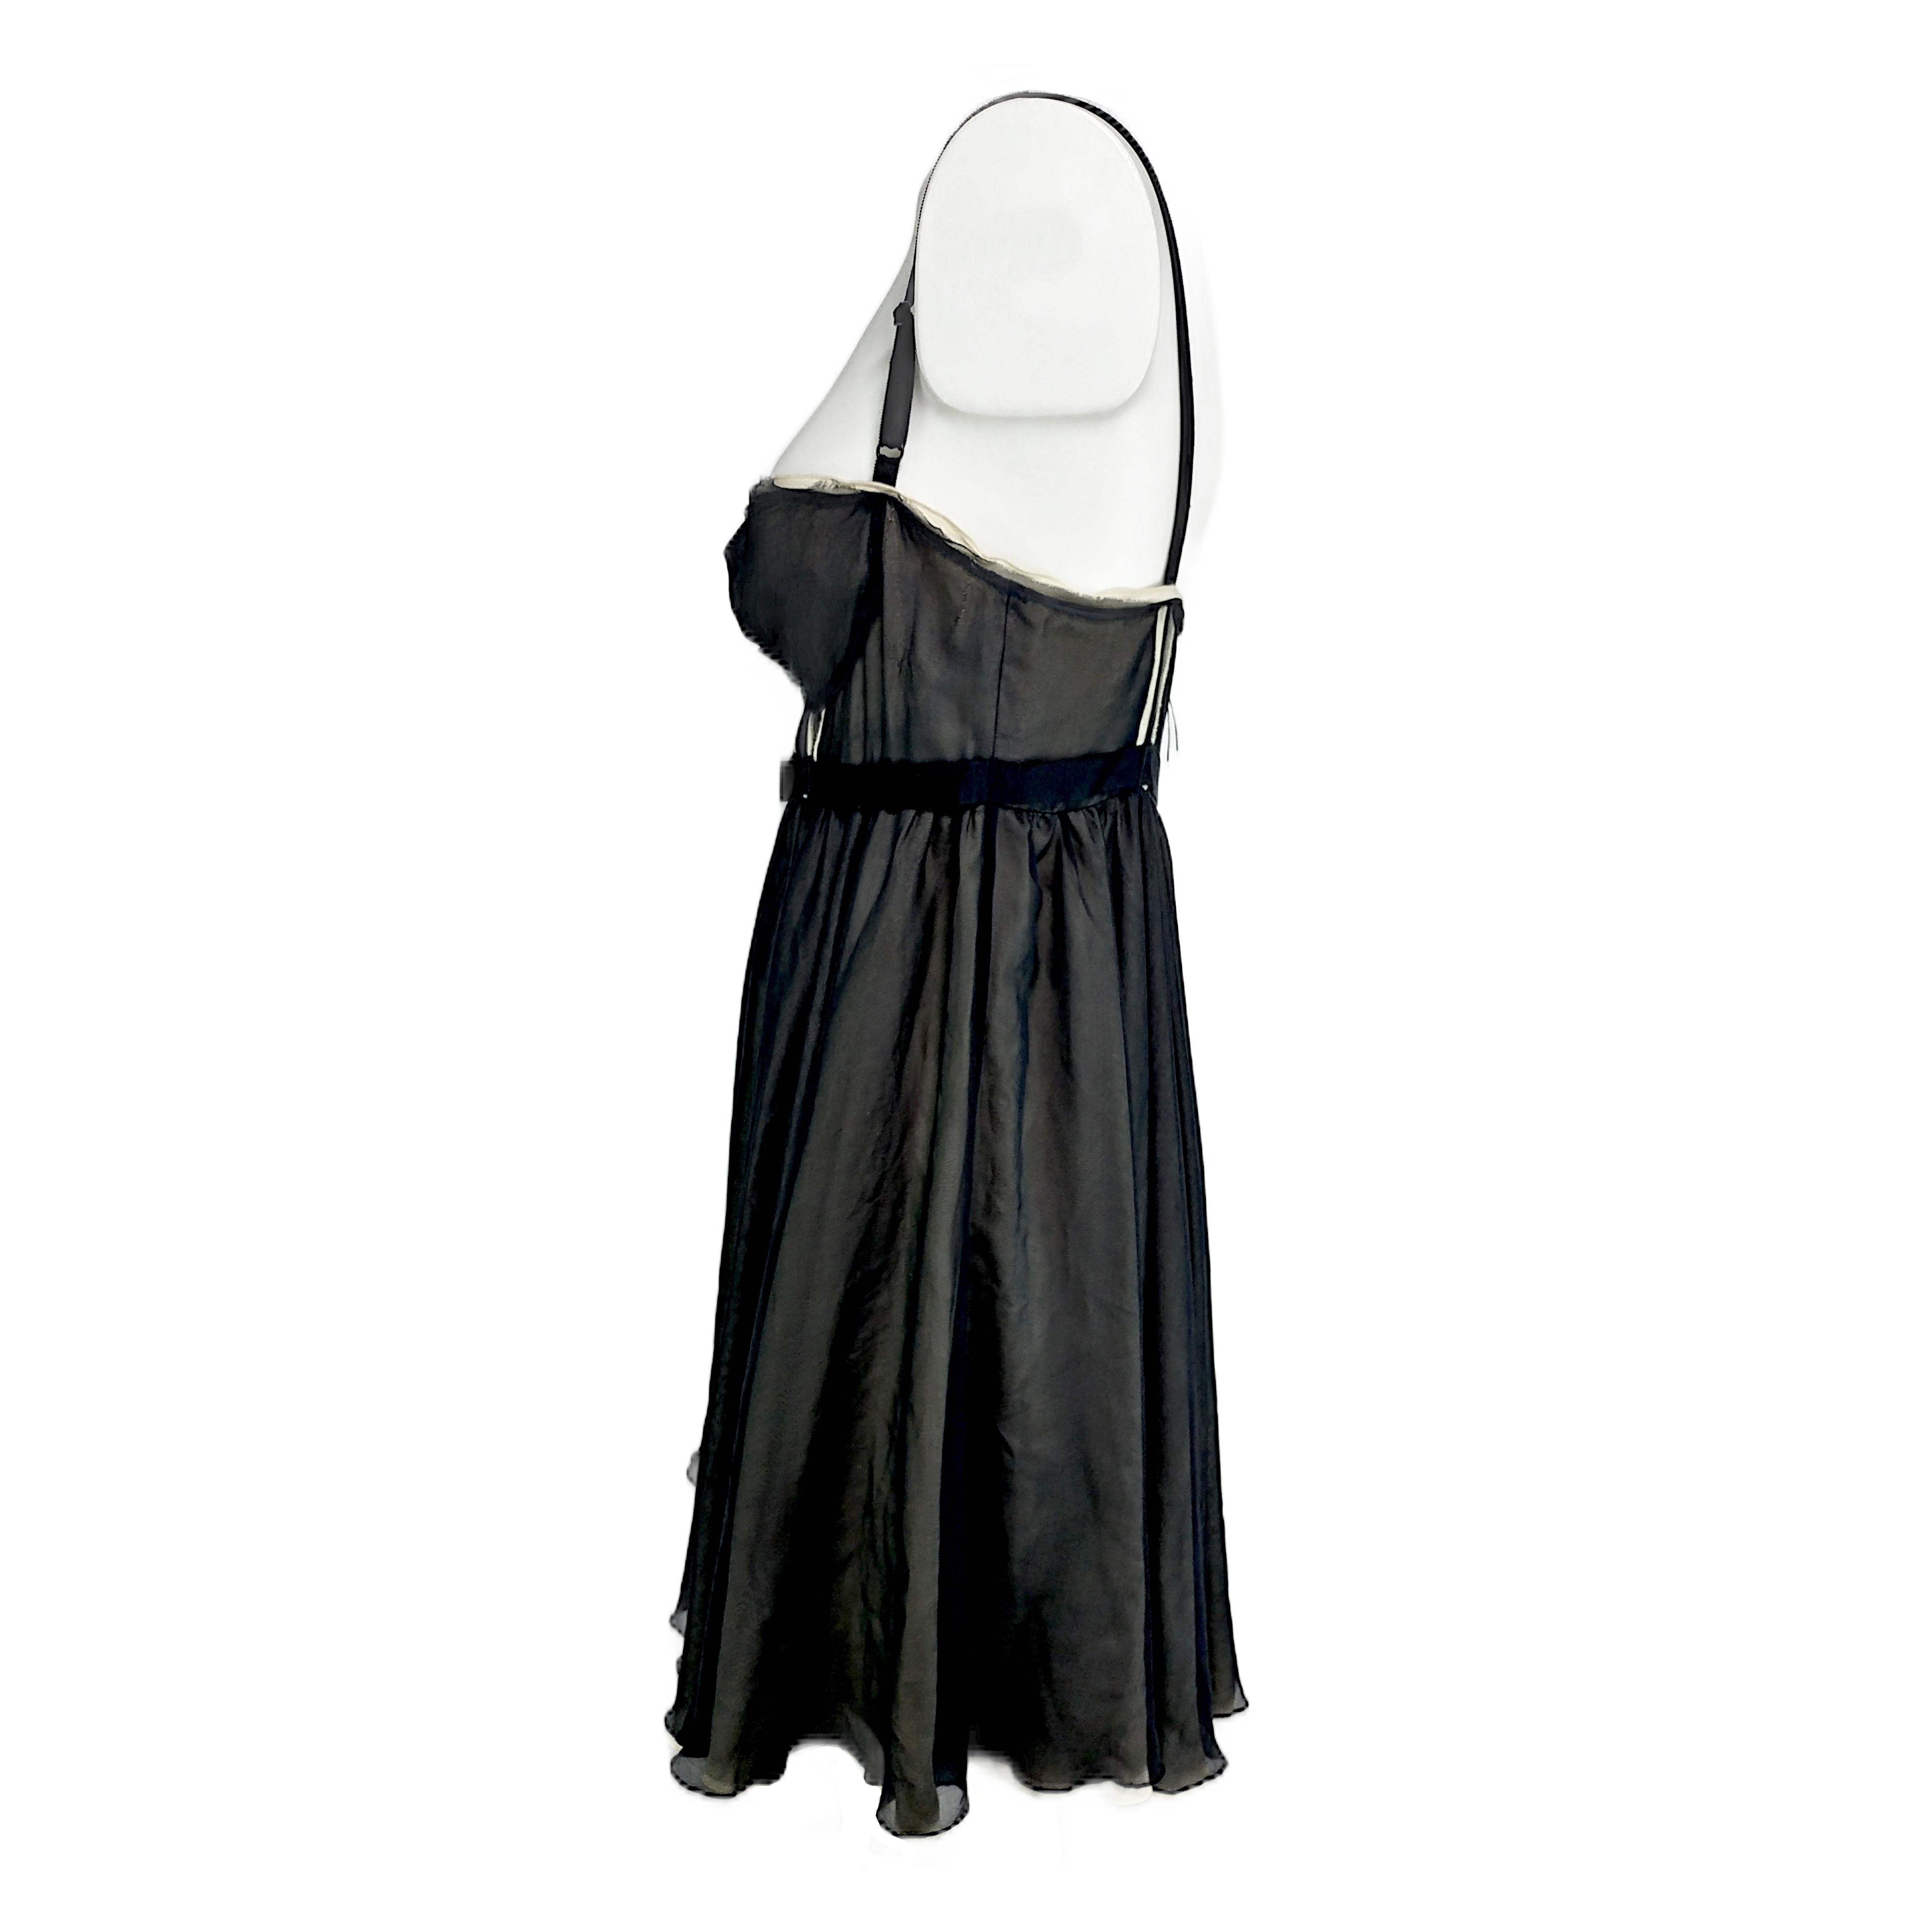 Dieses Babydoll-Kleid ist aus schwarzem Seidenchiffon gefertigt und vollständig mit beigefarbenem Seiden-Crêpe de Chine gefüttert. Sie hat einen kreisrunden Rock, ein Paar verstellbare Träger und einen Reißverschluss auf der Rückseite, der mit dem